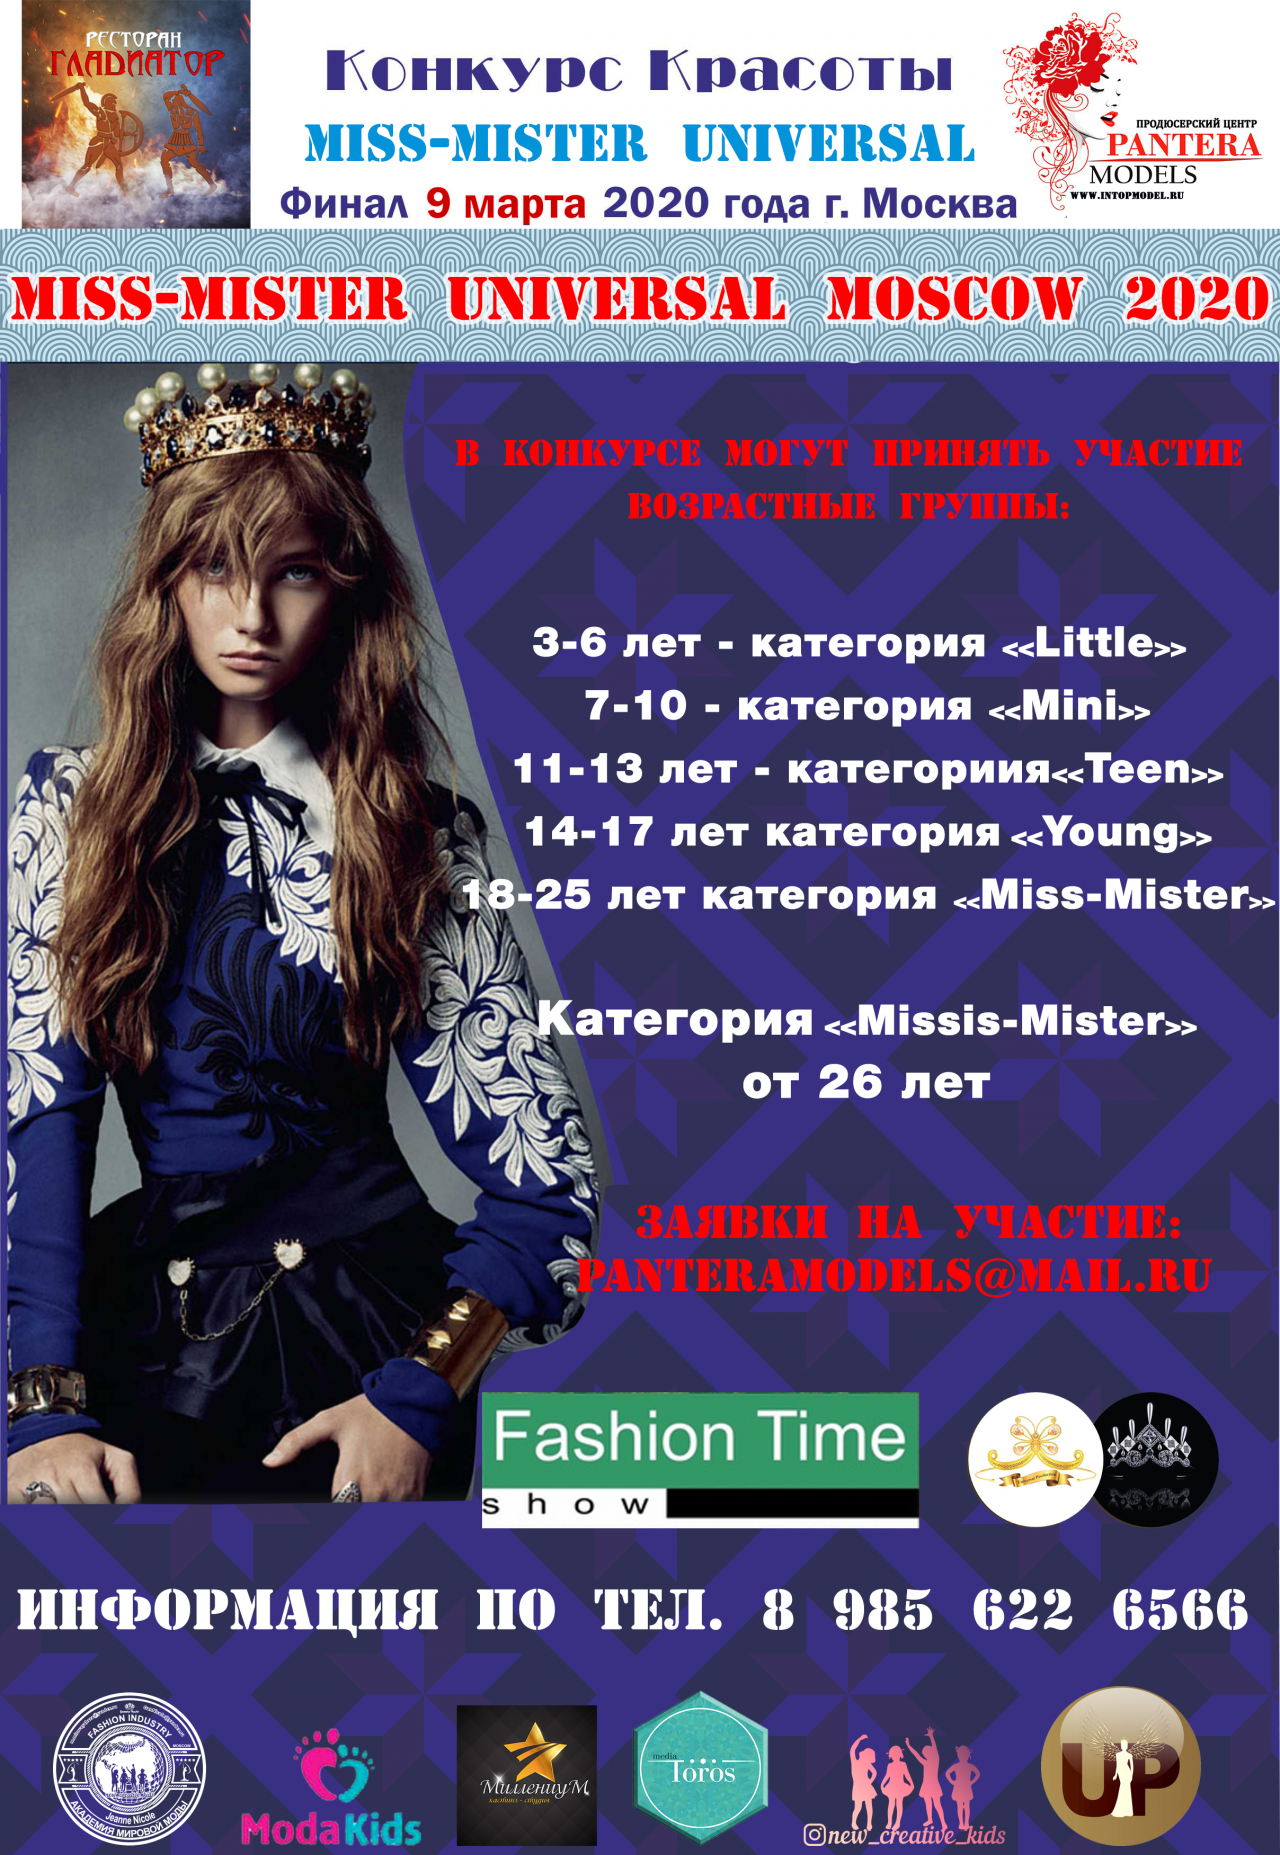 Приглашаем принять участие в Международном конкурсе красоты " MISS-MISTER UNIVERSAL 2020 - Moscow"